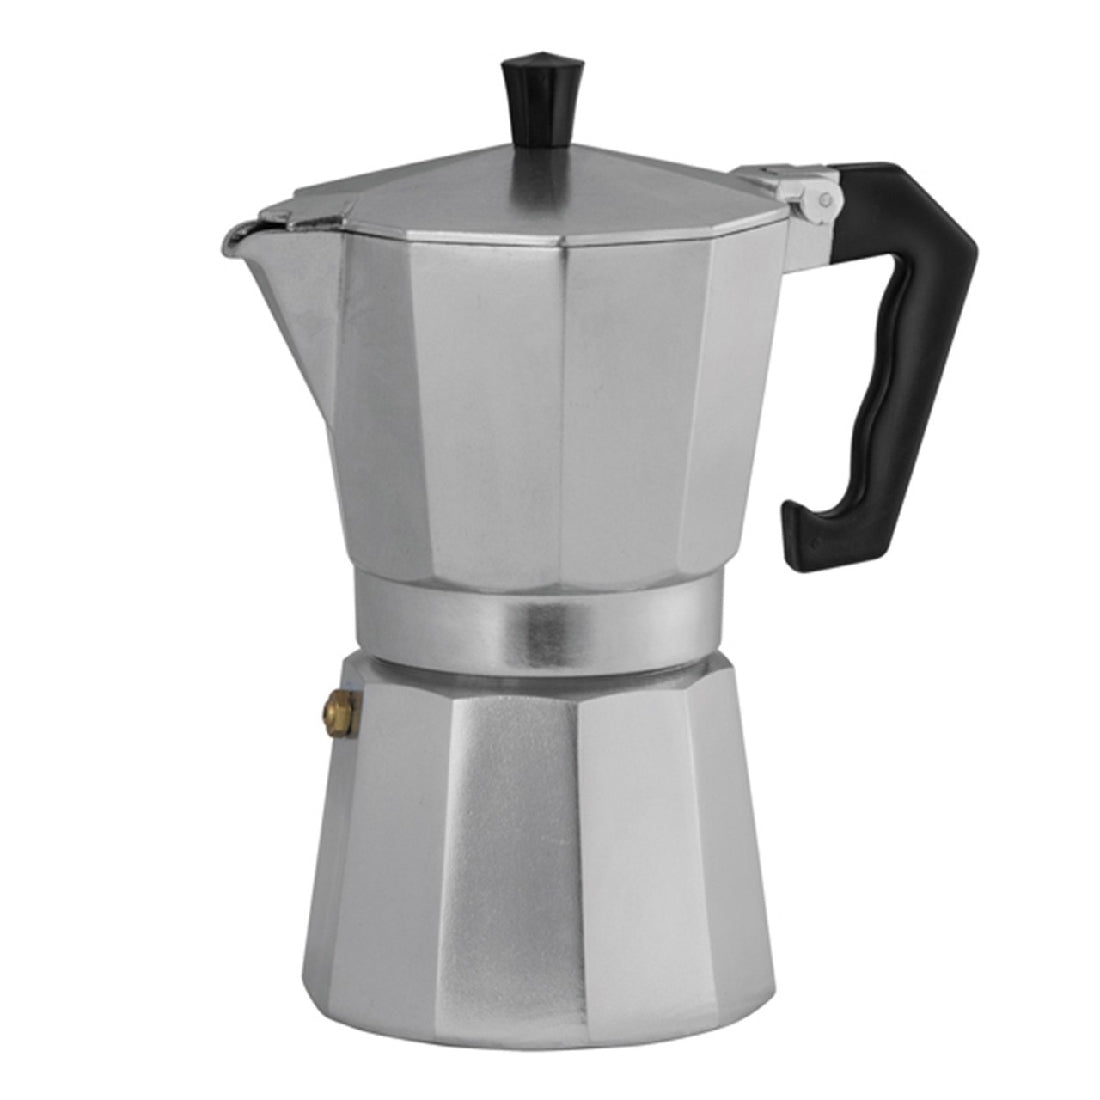 Avanti Classic Pro 3cup/150ml Espresso Coffee Maker